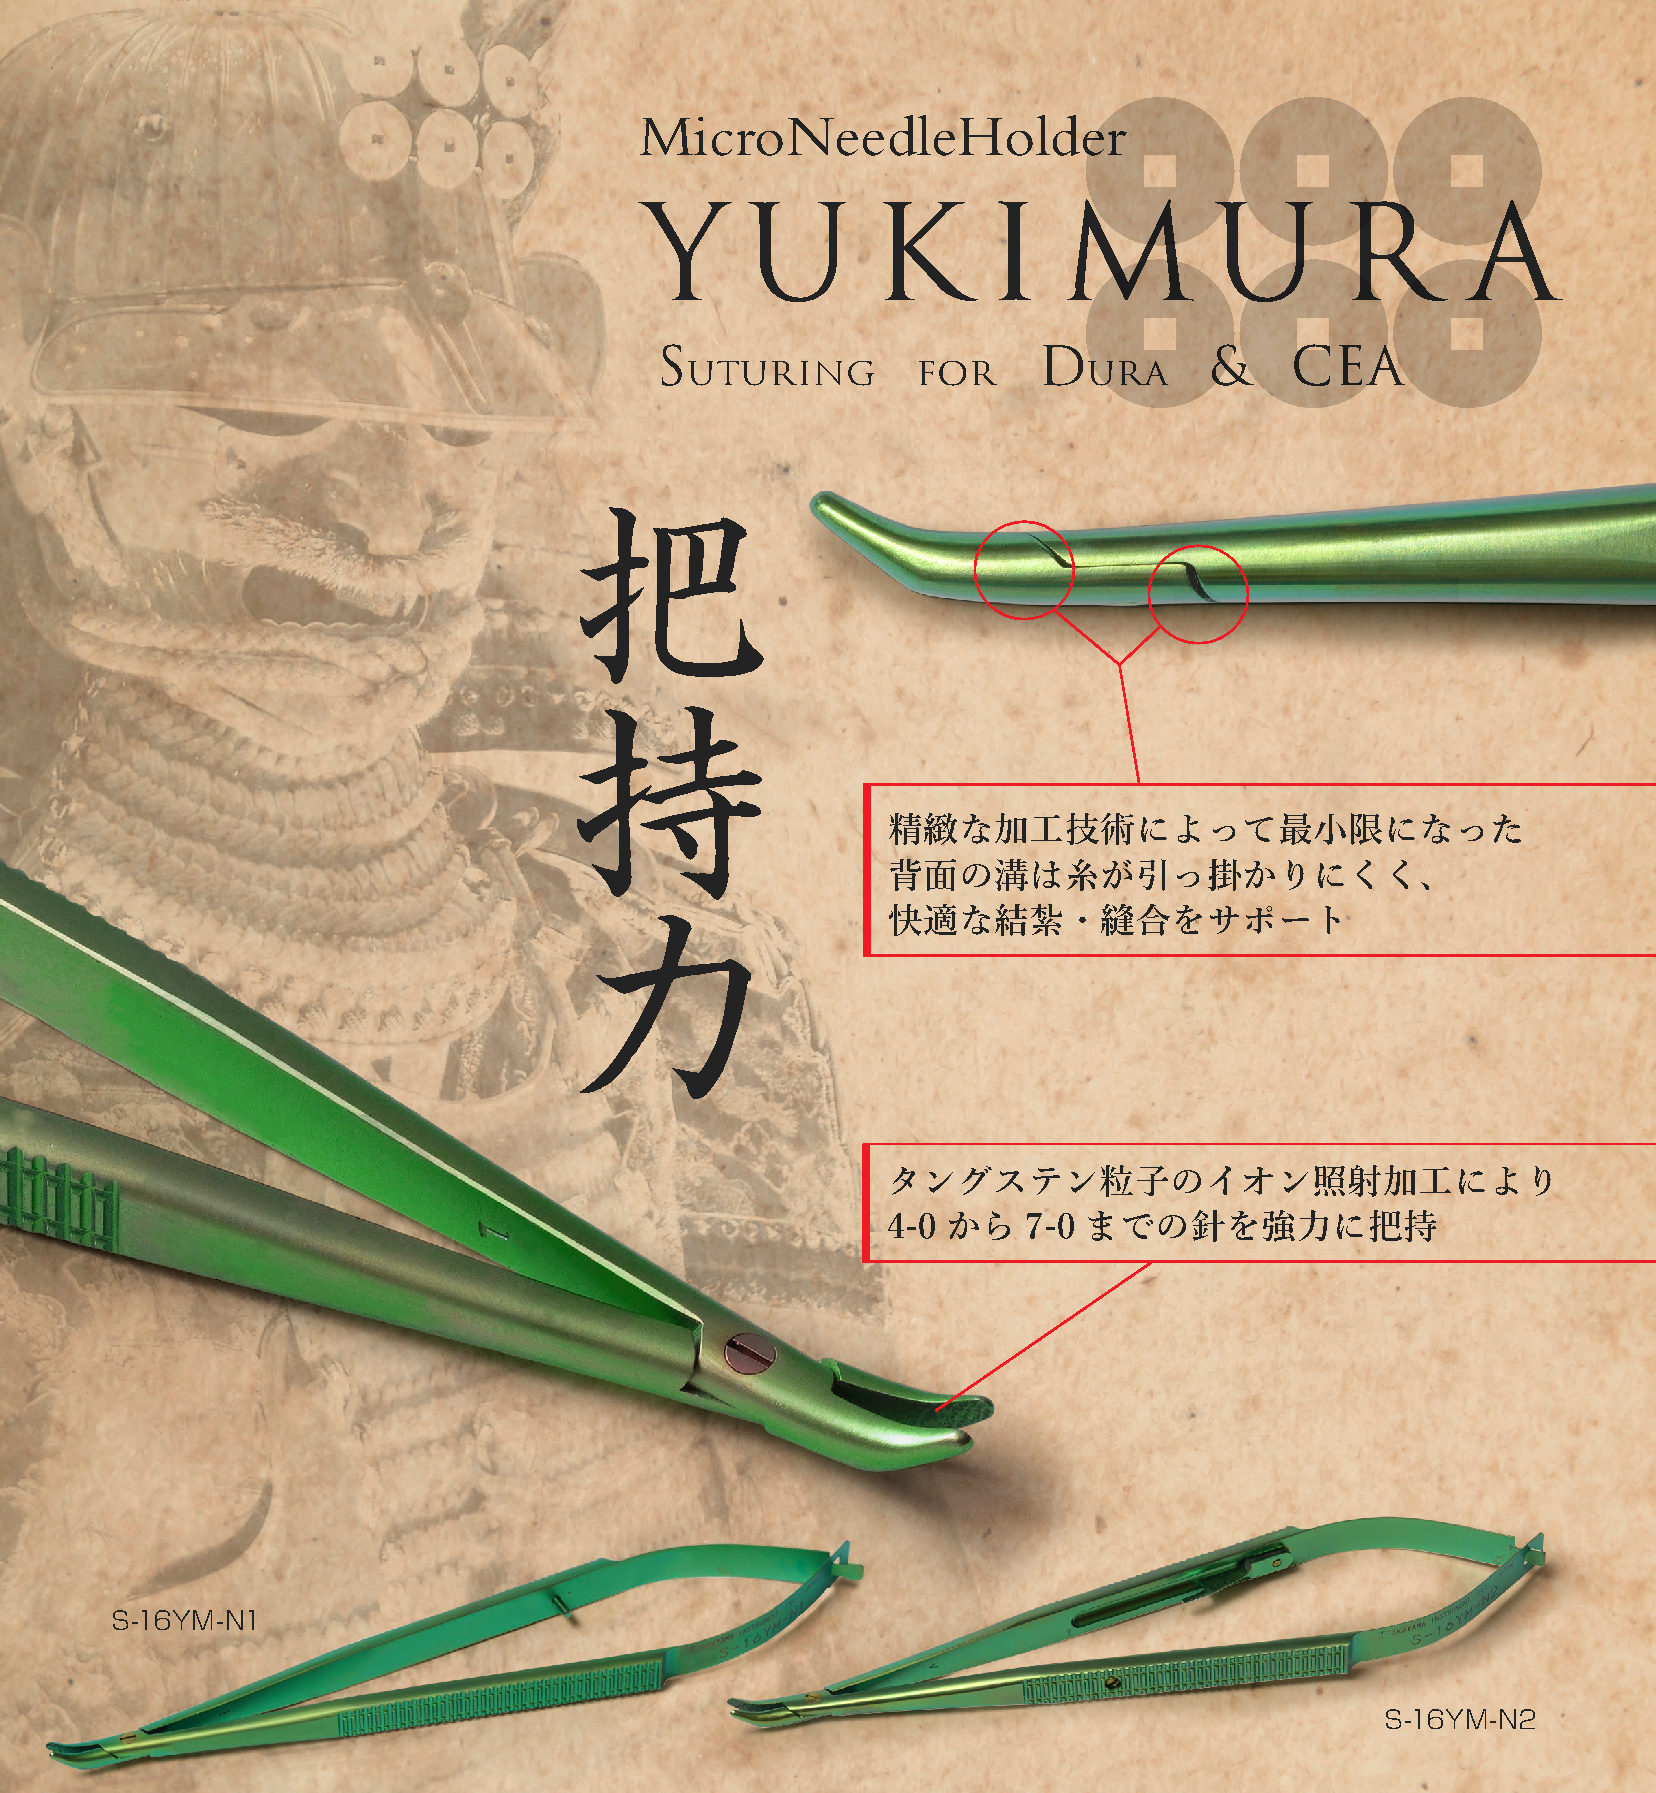 縫合-ユキムラ-製品ラインナップ